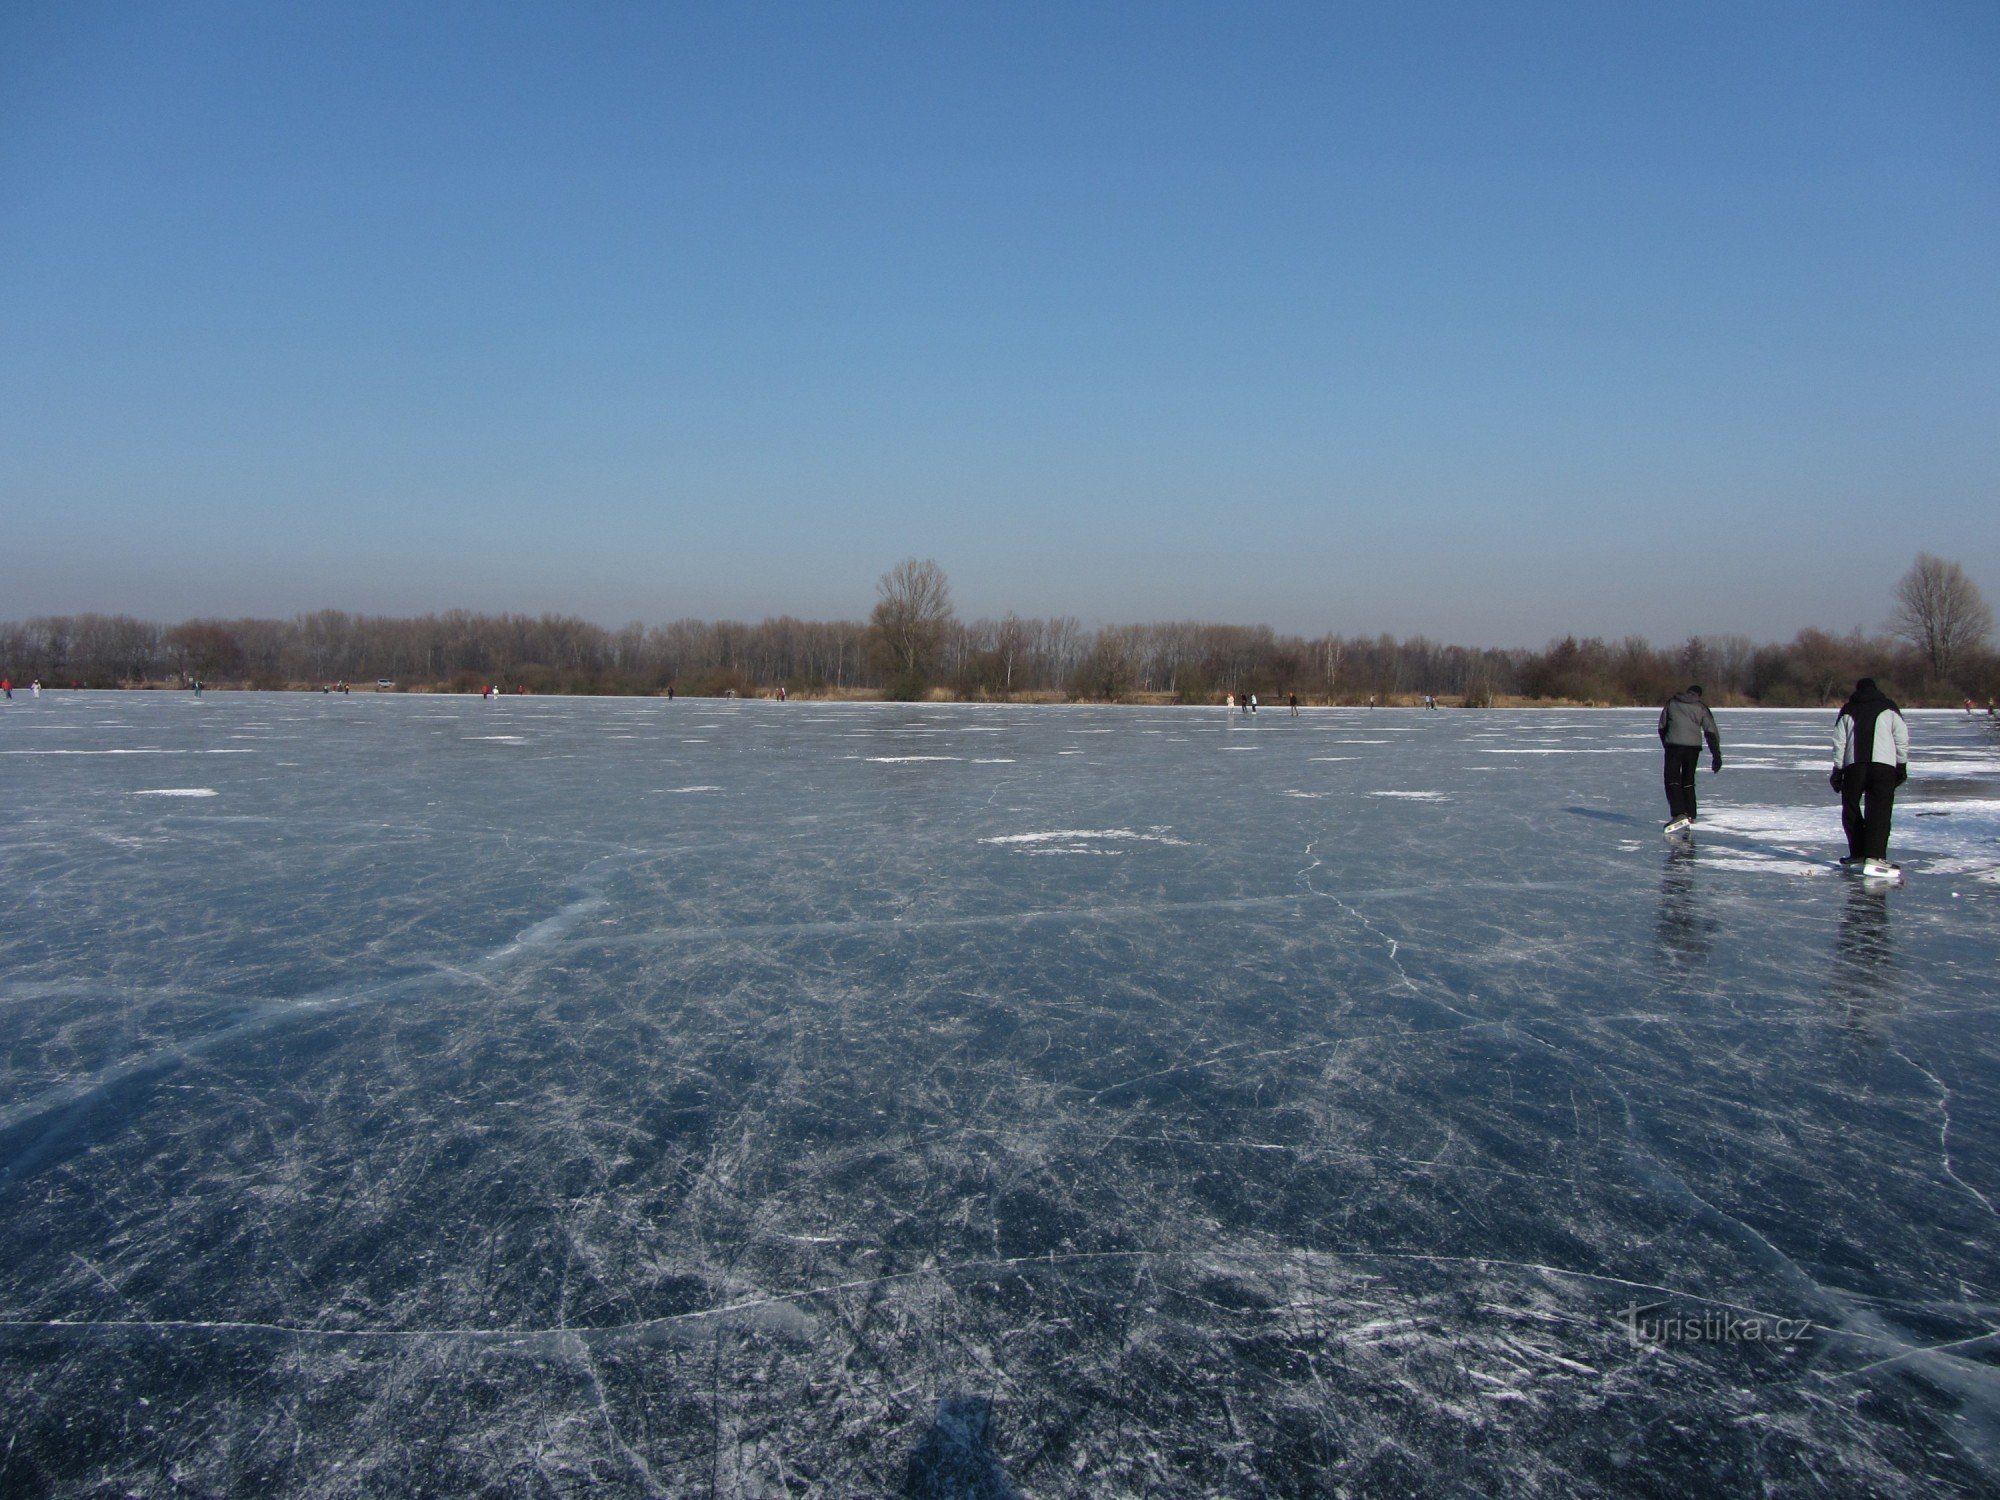 Ice area at Poděbrady near Olomouc (February 2012)